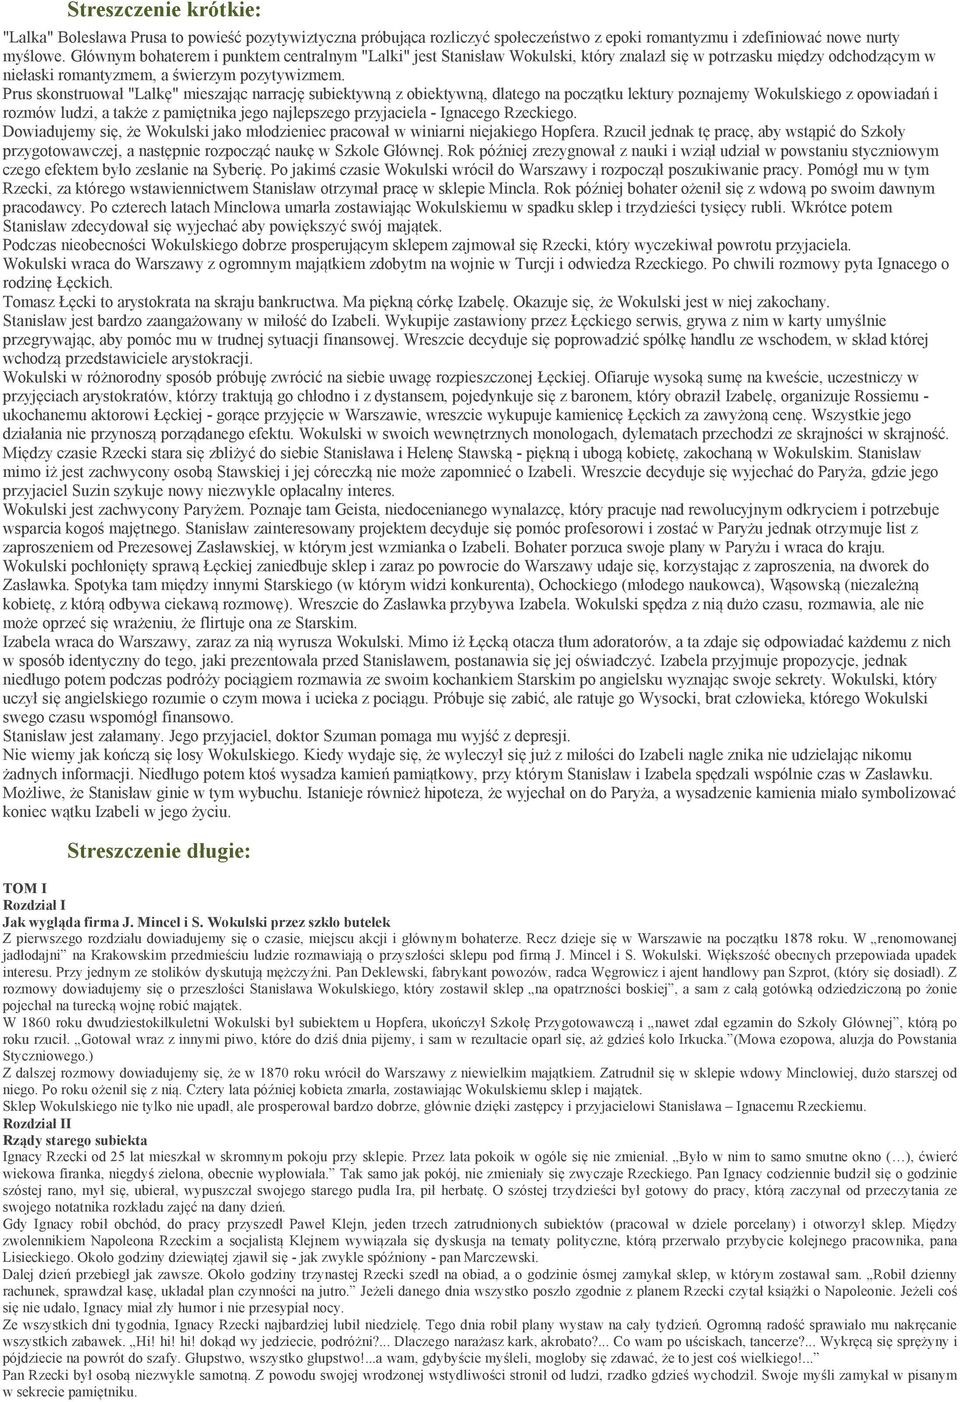 Boleslaw Prus lalka. Szczegółowy plan wydarzeń w "Lalce": - PDF Darmowe  pobieranie